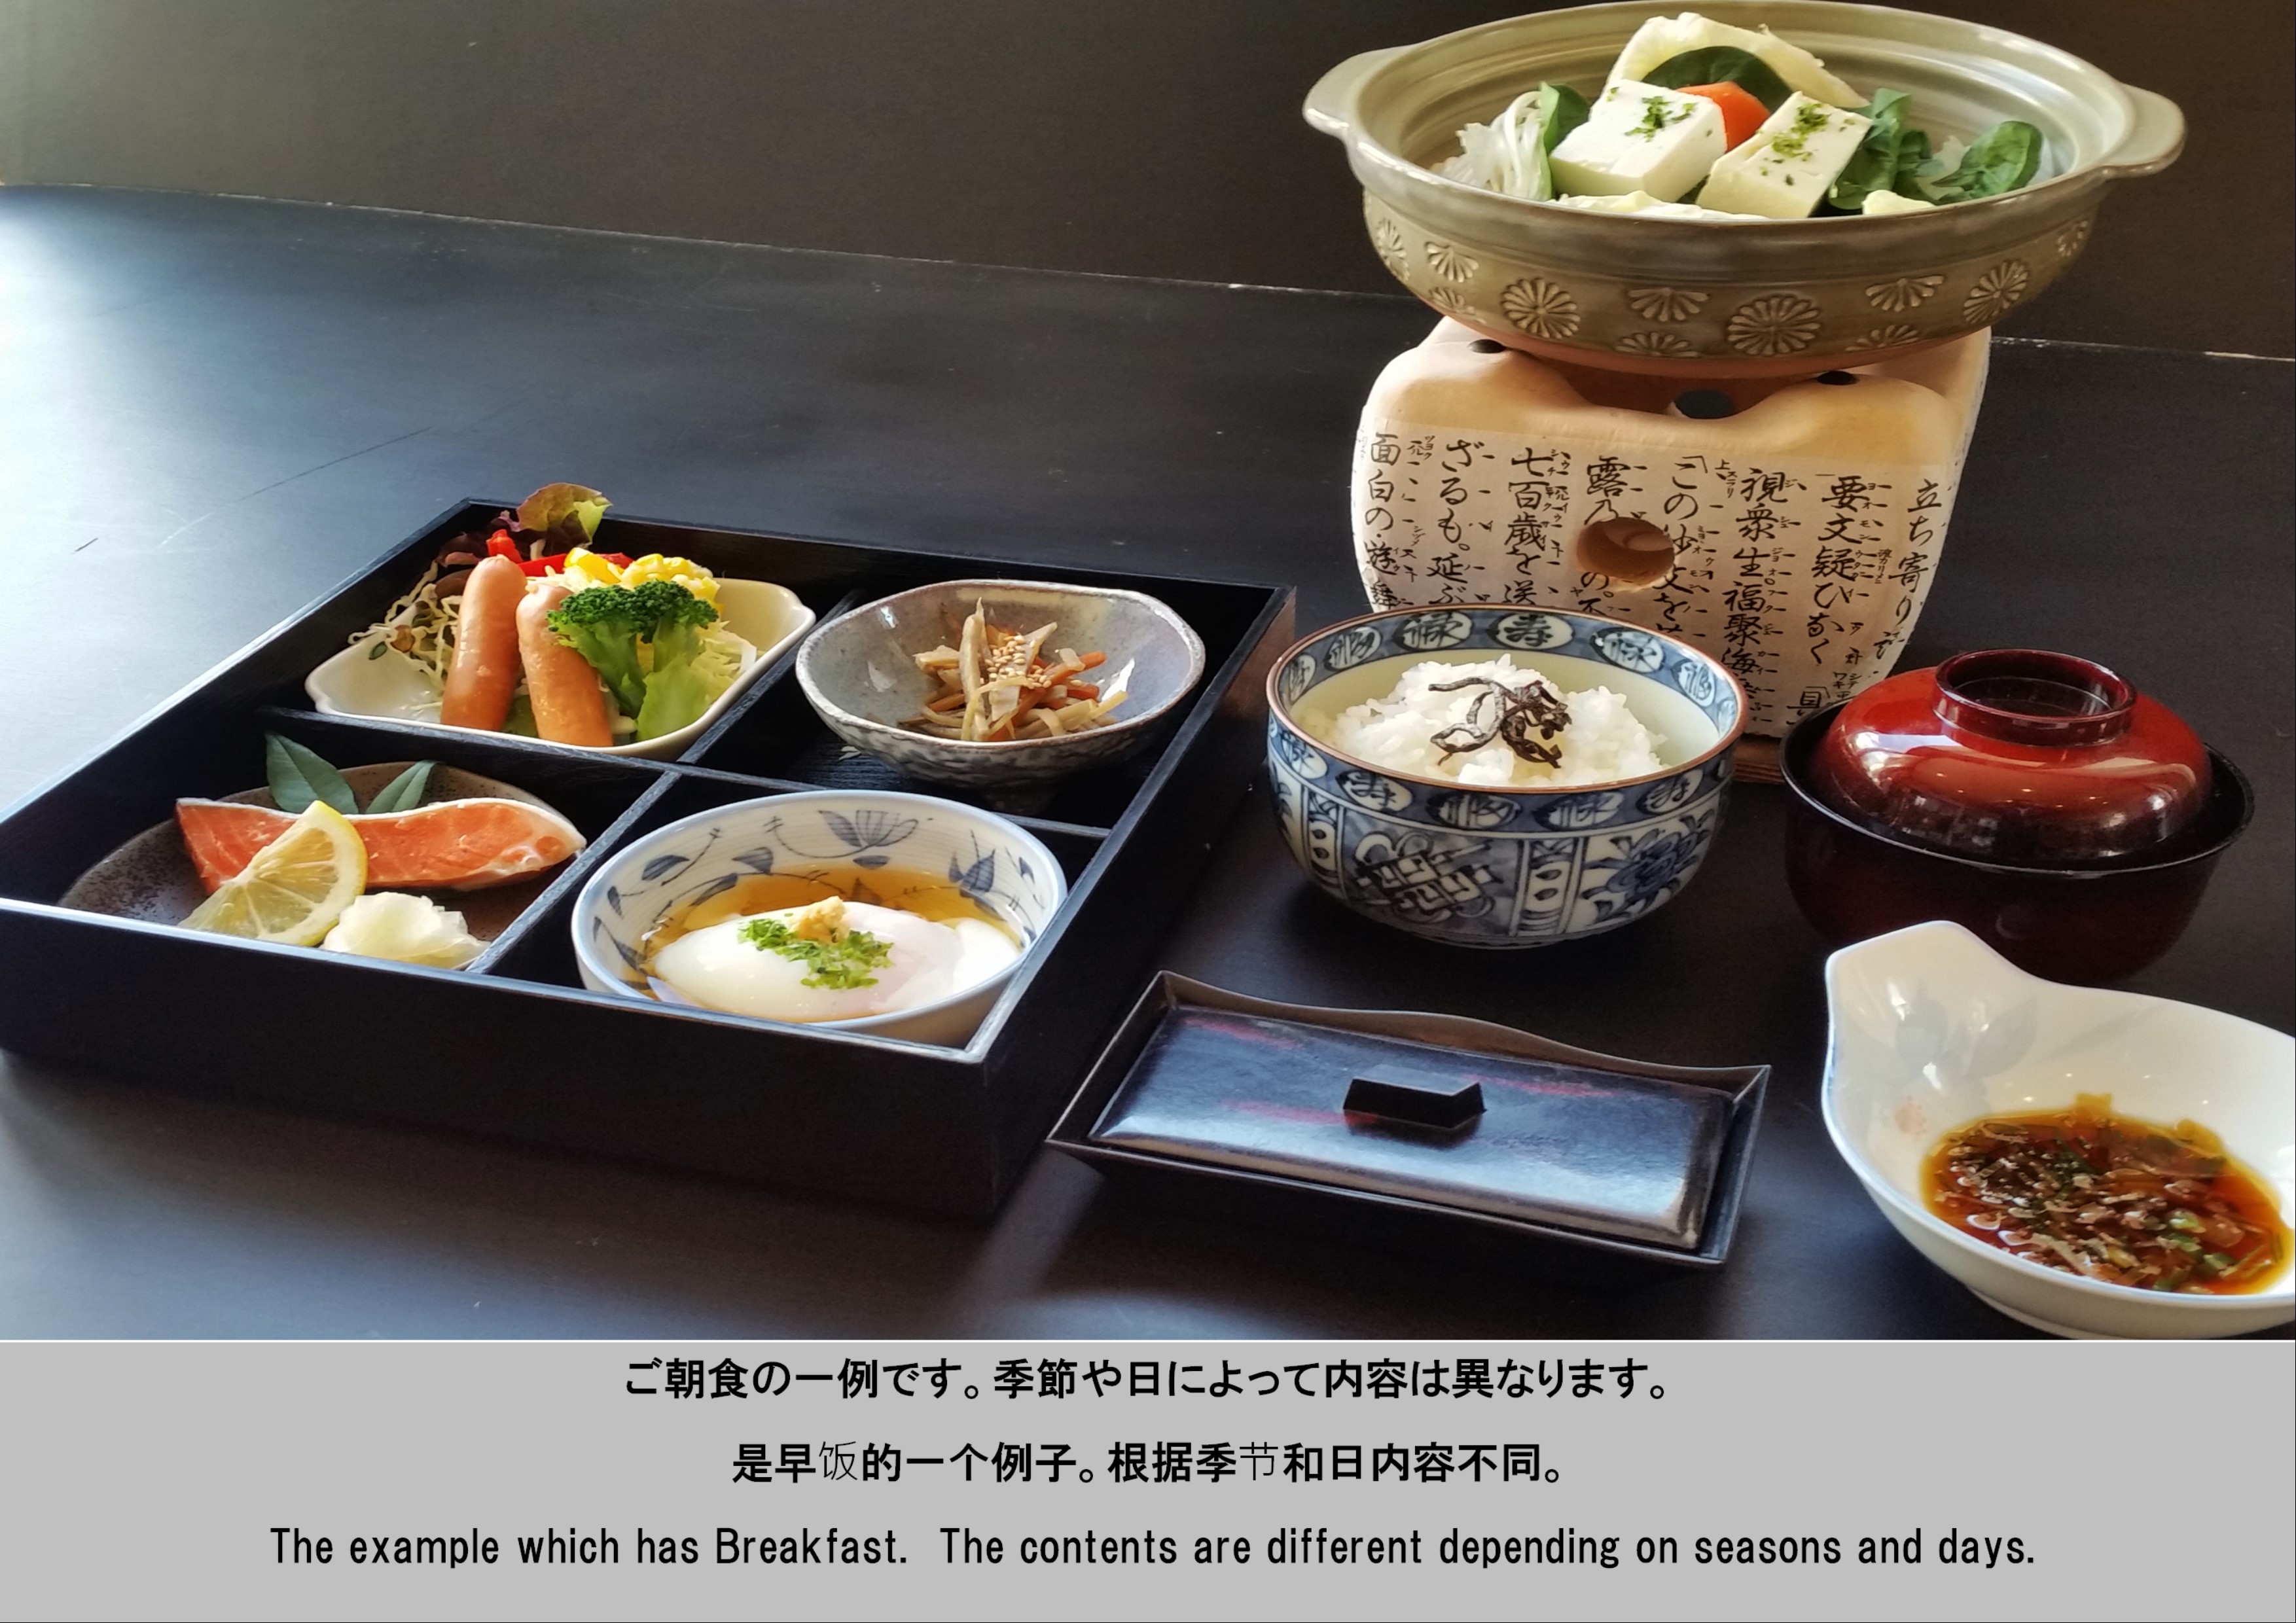 【ご朝食の一例】温泉たまごや湯豆腐などなど和食をベースとしたご朝食。